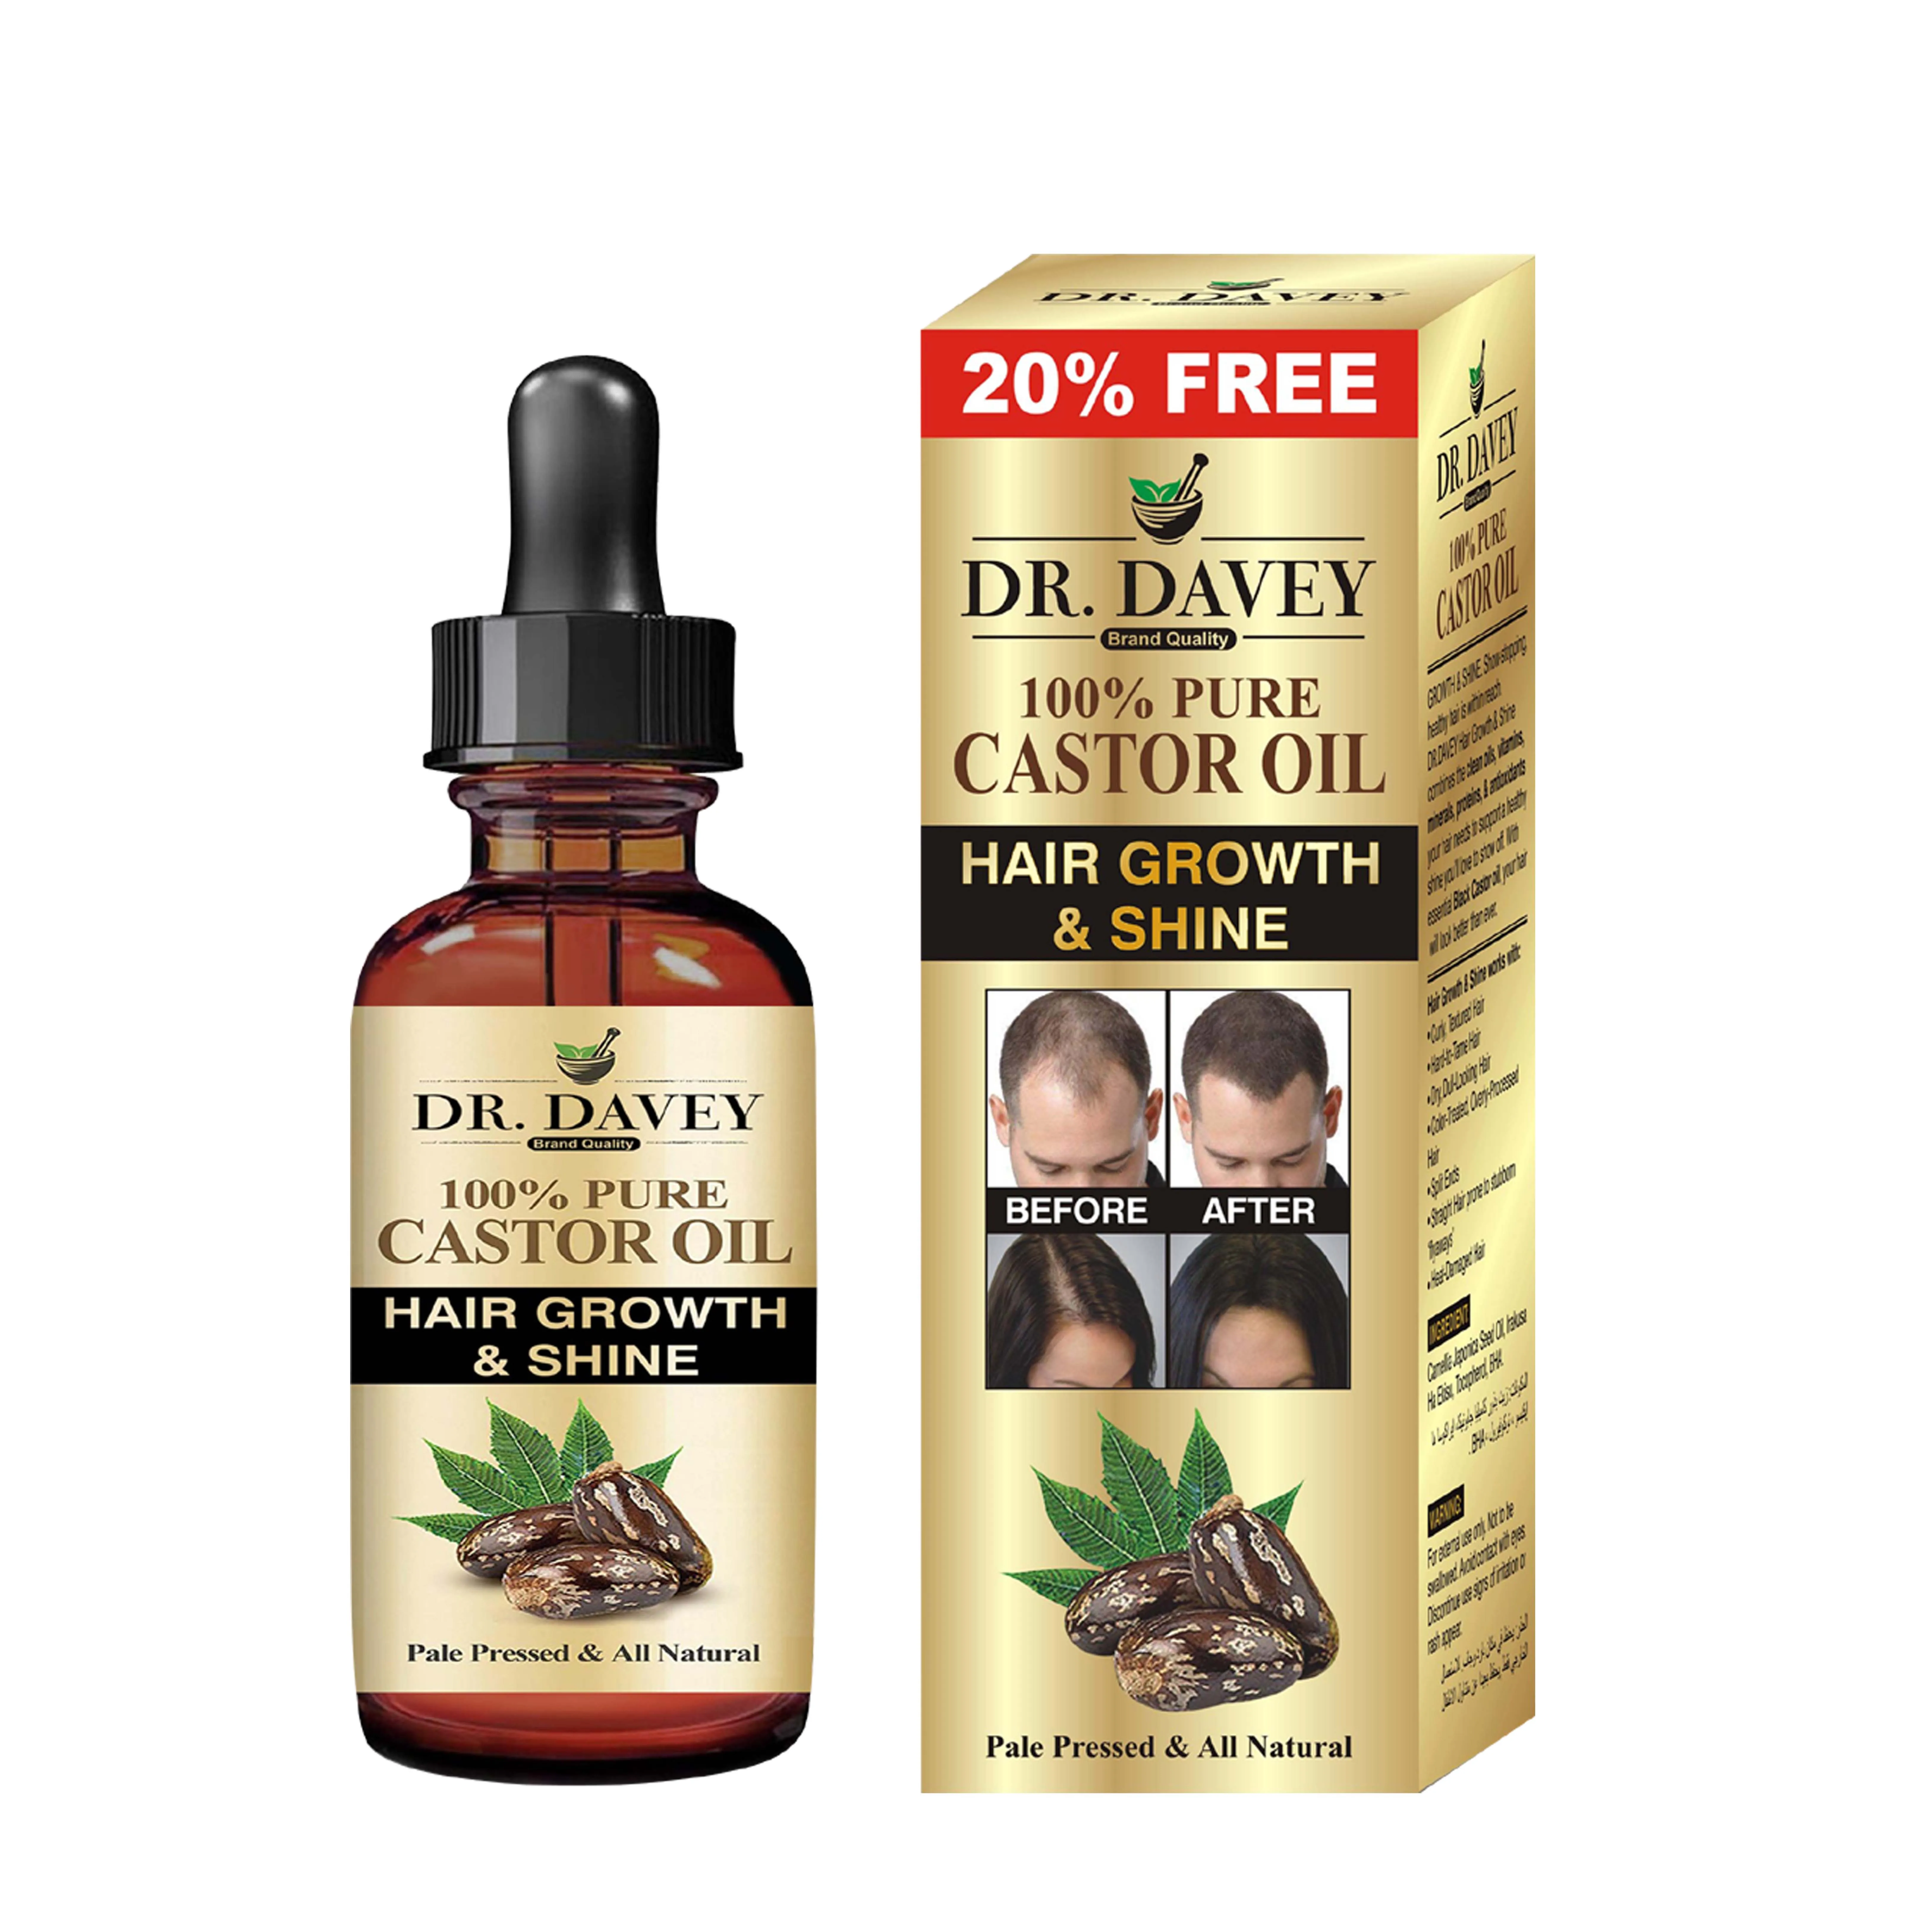 

DR.DAVEY Castor oil hairgrowth&shine Anti-hair loss control oil anti-dandruff for hair repair, Brown